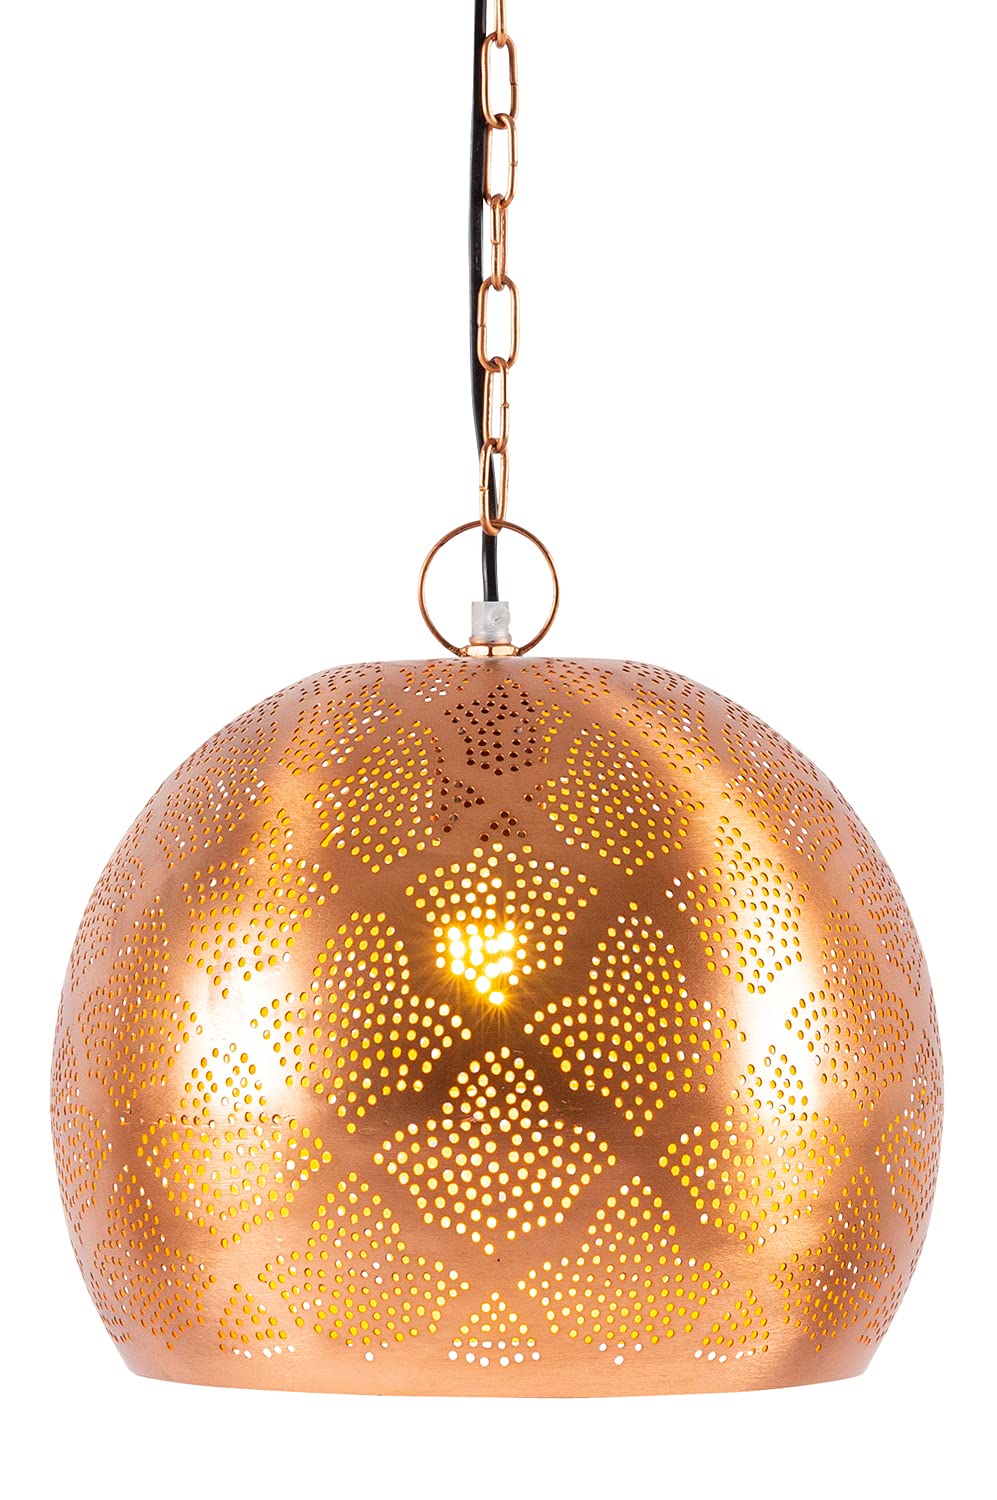 MAADES Moderne Pendelleuchte Rayhana 30cm Kupferfarbig E27 Lampenfassung | Modern Design Lampe Leuchte | Lampen für Wohnzimmer, Küche oder Hängend über den Esstisch